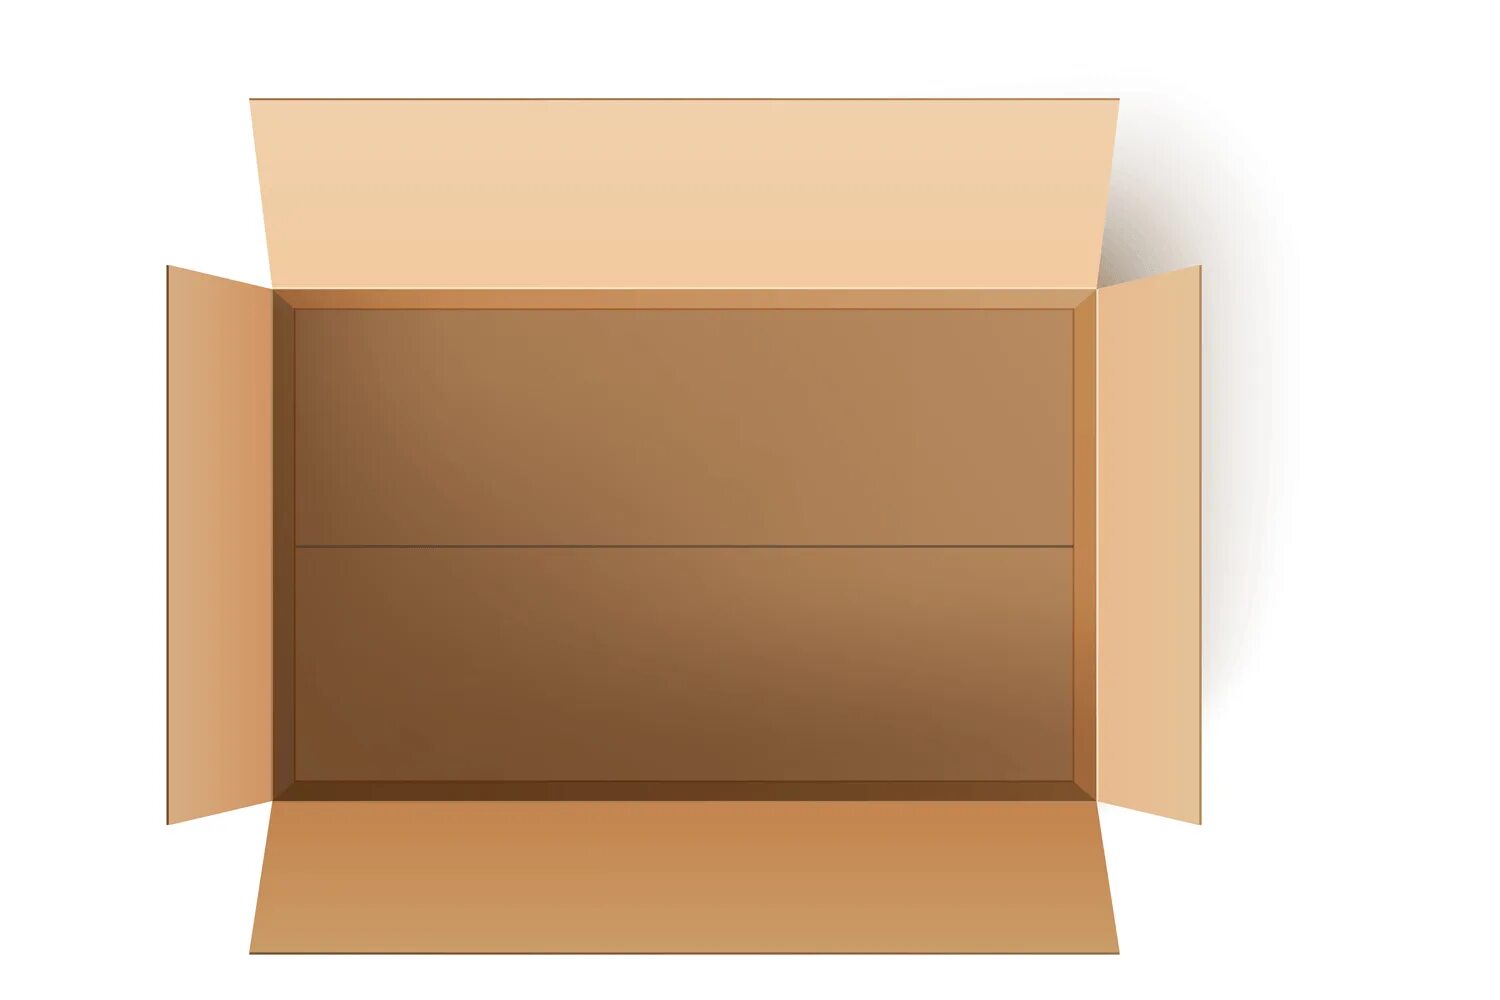 Открой коробку 5. Коробка вид сверху. Картонная коробка вид сверху. Открытая картонная коробка вид сверху. Подарочная коробка сверху.